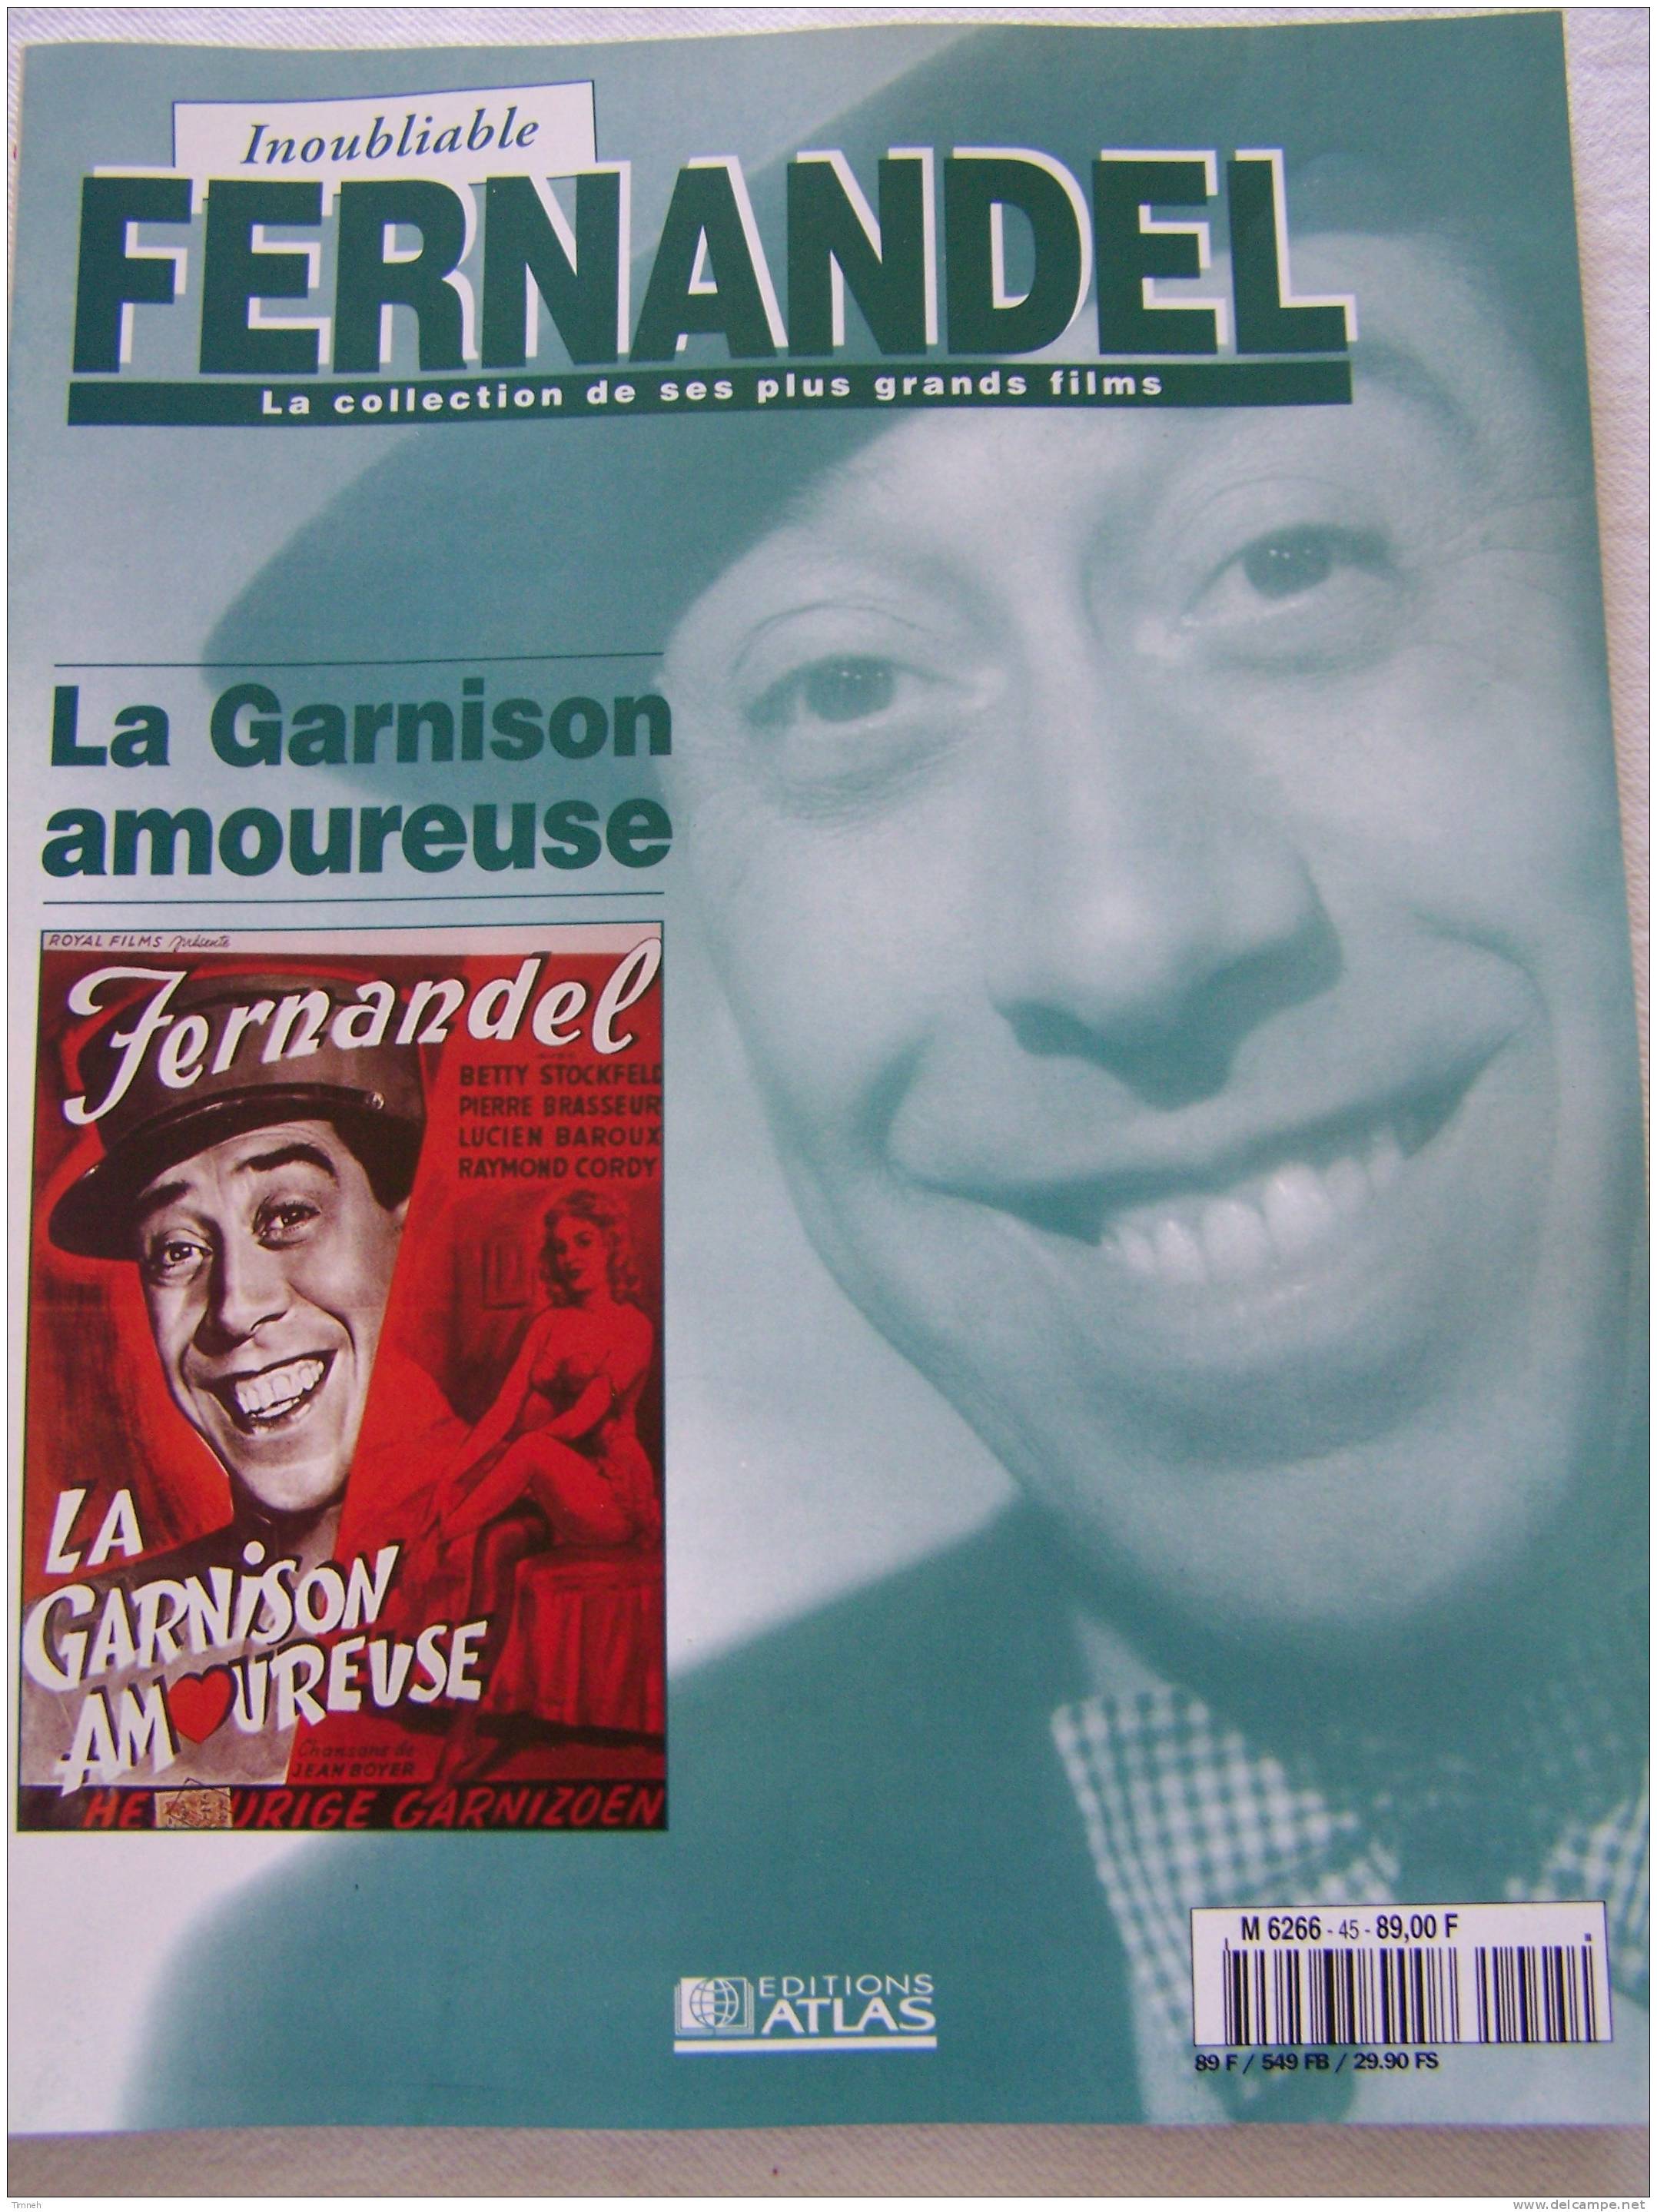 La Garnison Amoureuse-Inoubliable FERNANDEL-la Collection De Ses Plus Grands Films-1995 Revue Editions ATLAS- - Film/ Televisie